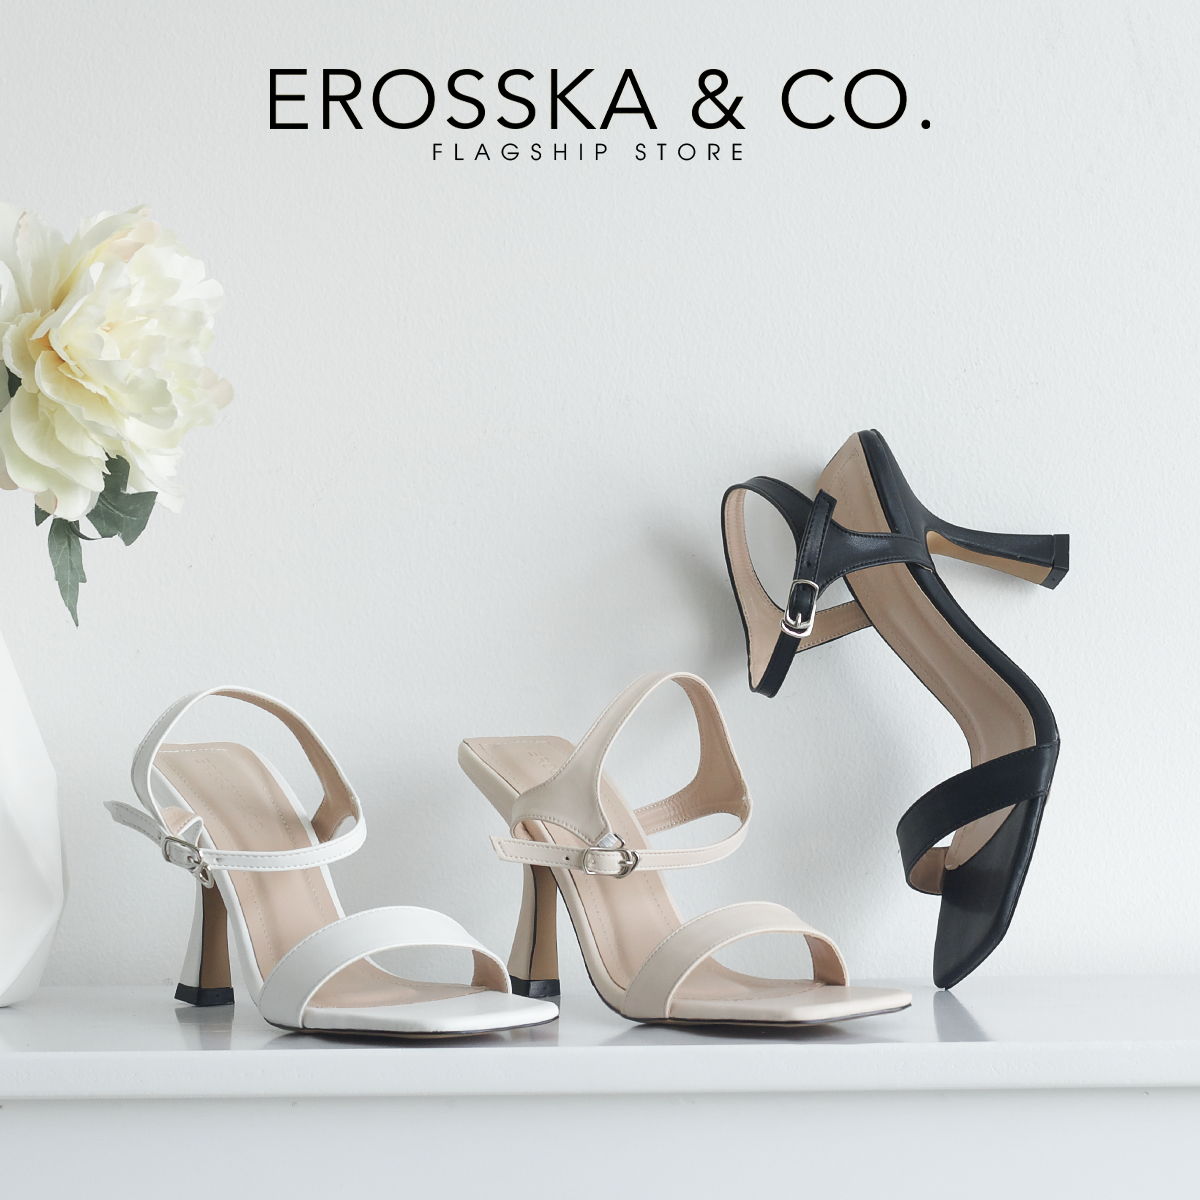 [Form nhỏ tăng 1 size] Erosska - Giày sandal cao gót nữ mũi hở gót nhọn phối dây quai mảnh cao 9cm - EB058